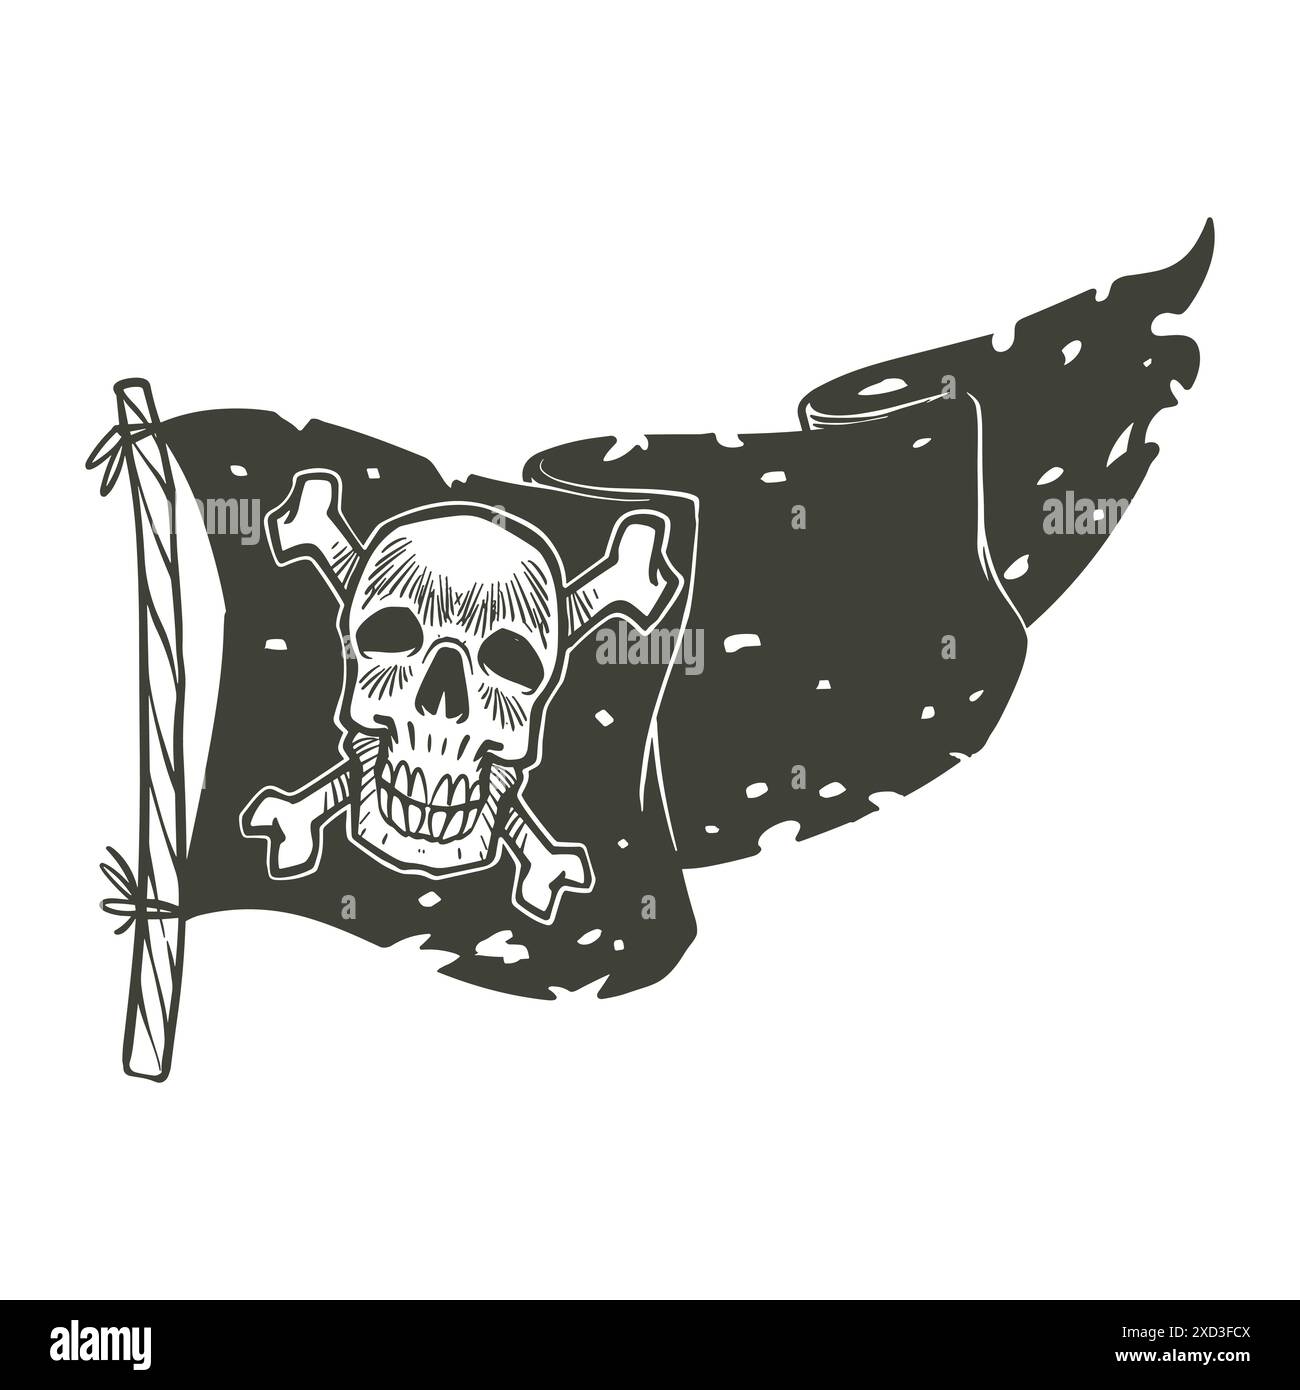 Bandiera dei pirati disegno vintage disegnato a mano in stile bianco e nero. Illustrazione vettoriale del concetto di attrezzatura pirata. Illustrazione Vettoriale